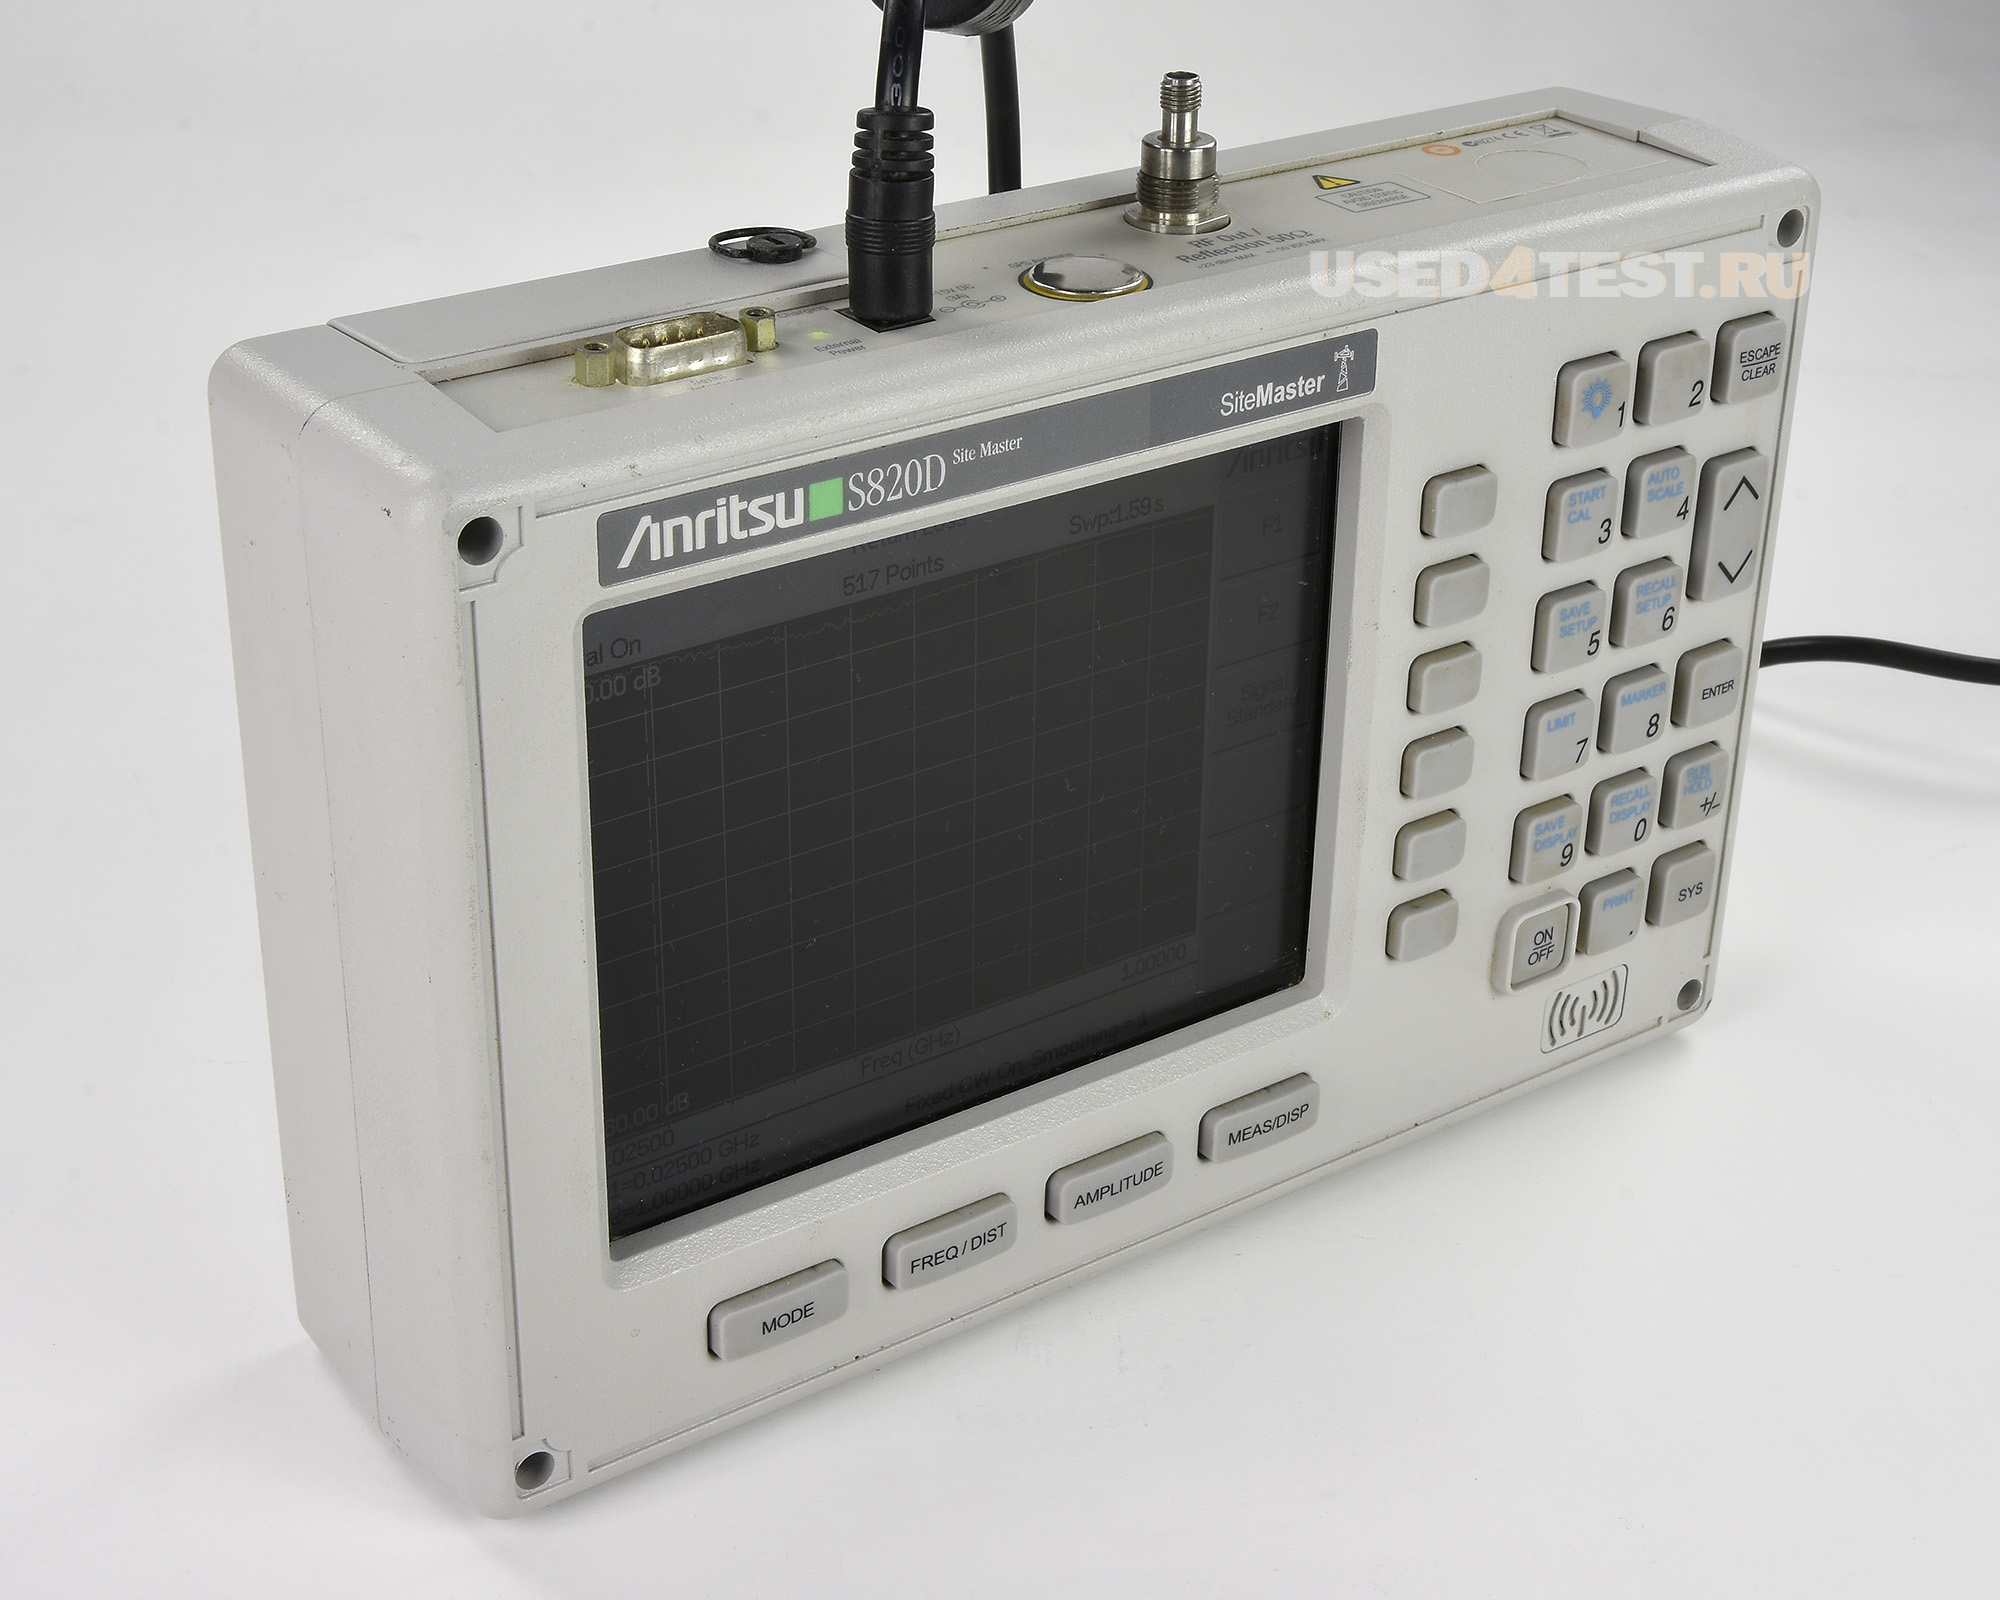 Портативный анализатор кабелей и антенн
 Anritsu Site Master S820D
 с диапазоном частот от 25 МГц до 20 ГГц 